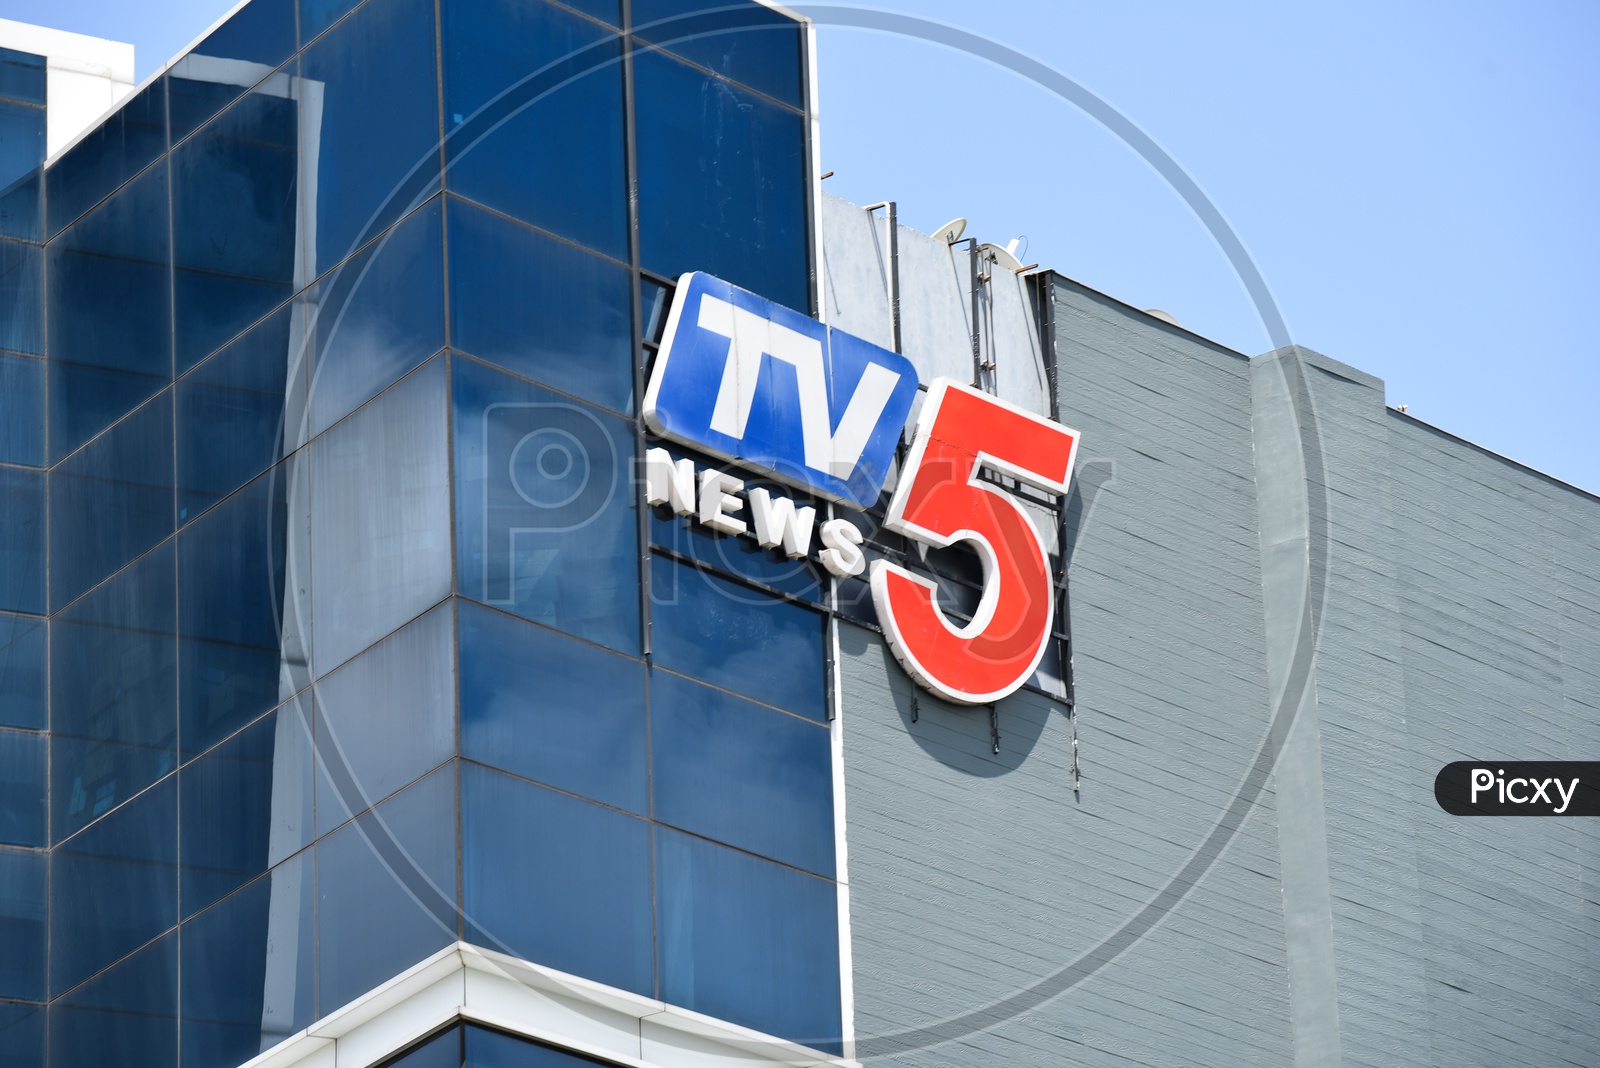 TV5 News Name Board on Building Facade